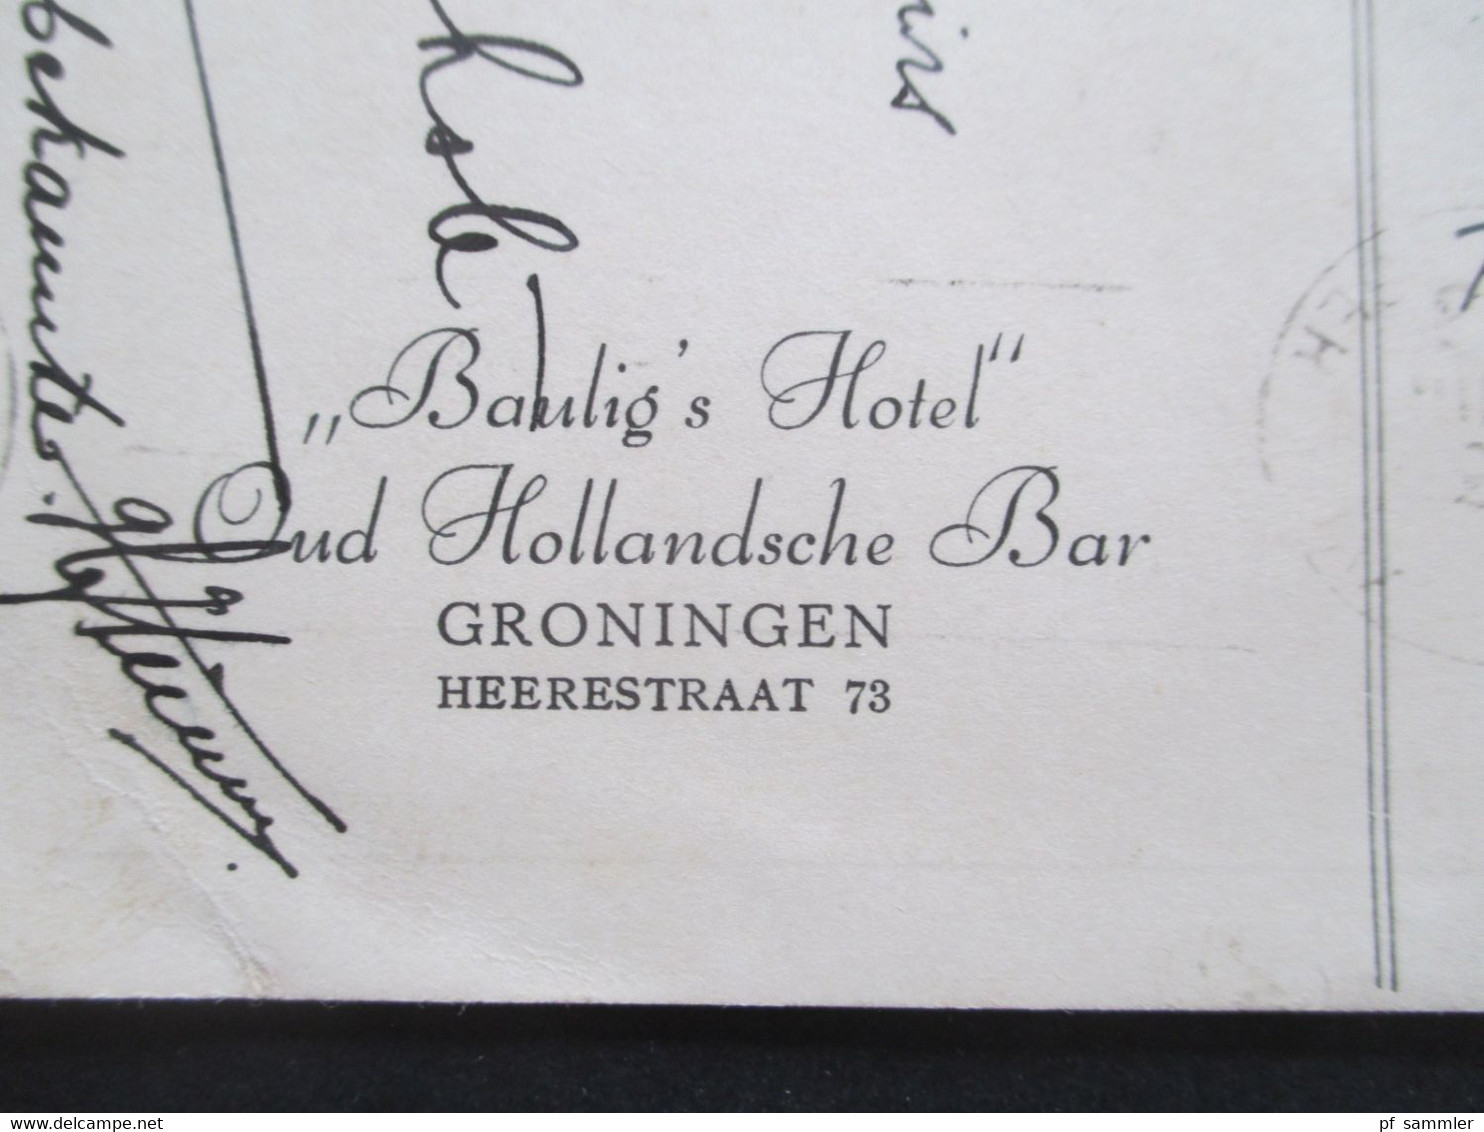 Niederlande 1939 AK Bist Du Traurig Geh Zu Baulig. Bist Du Froh Tuh Ebenso. Baulig's Hotel Oud Hollandsche Bar Groningen - Hotel's & Restaurants